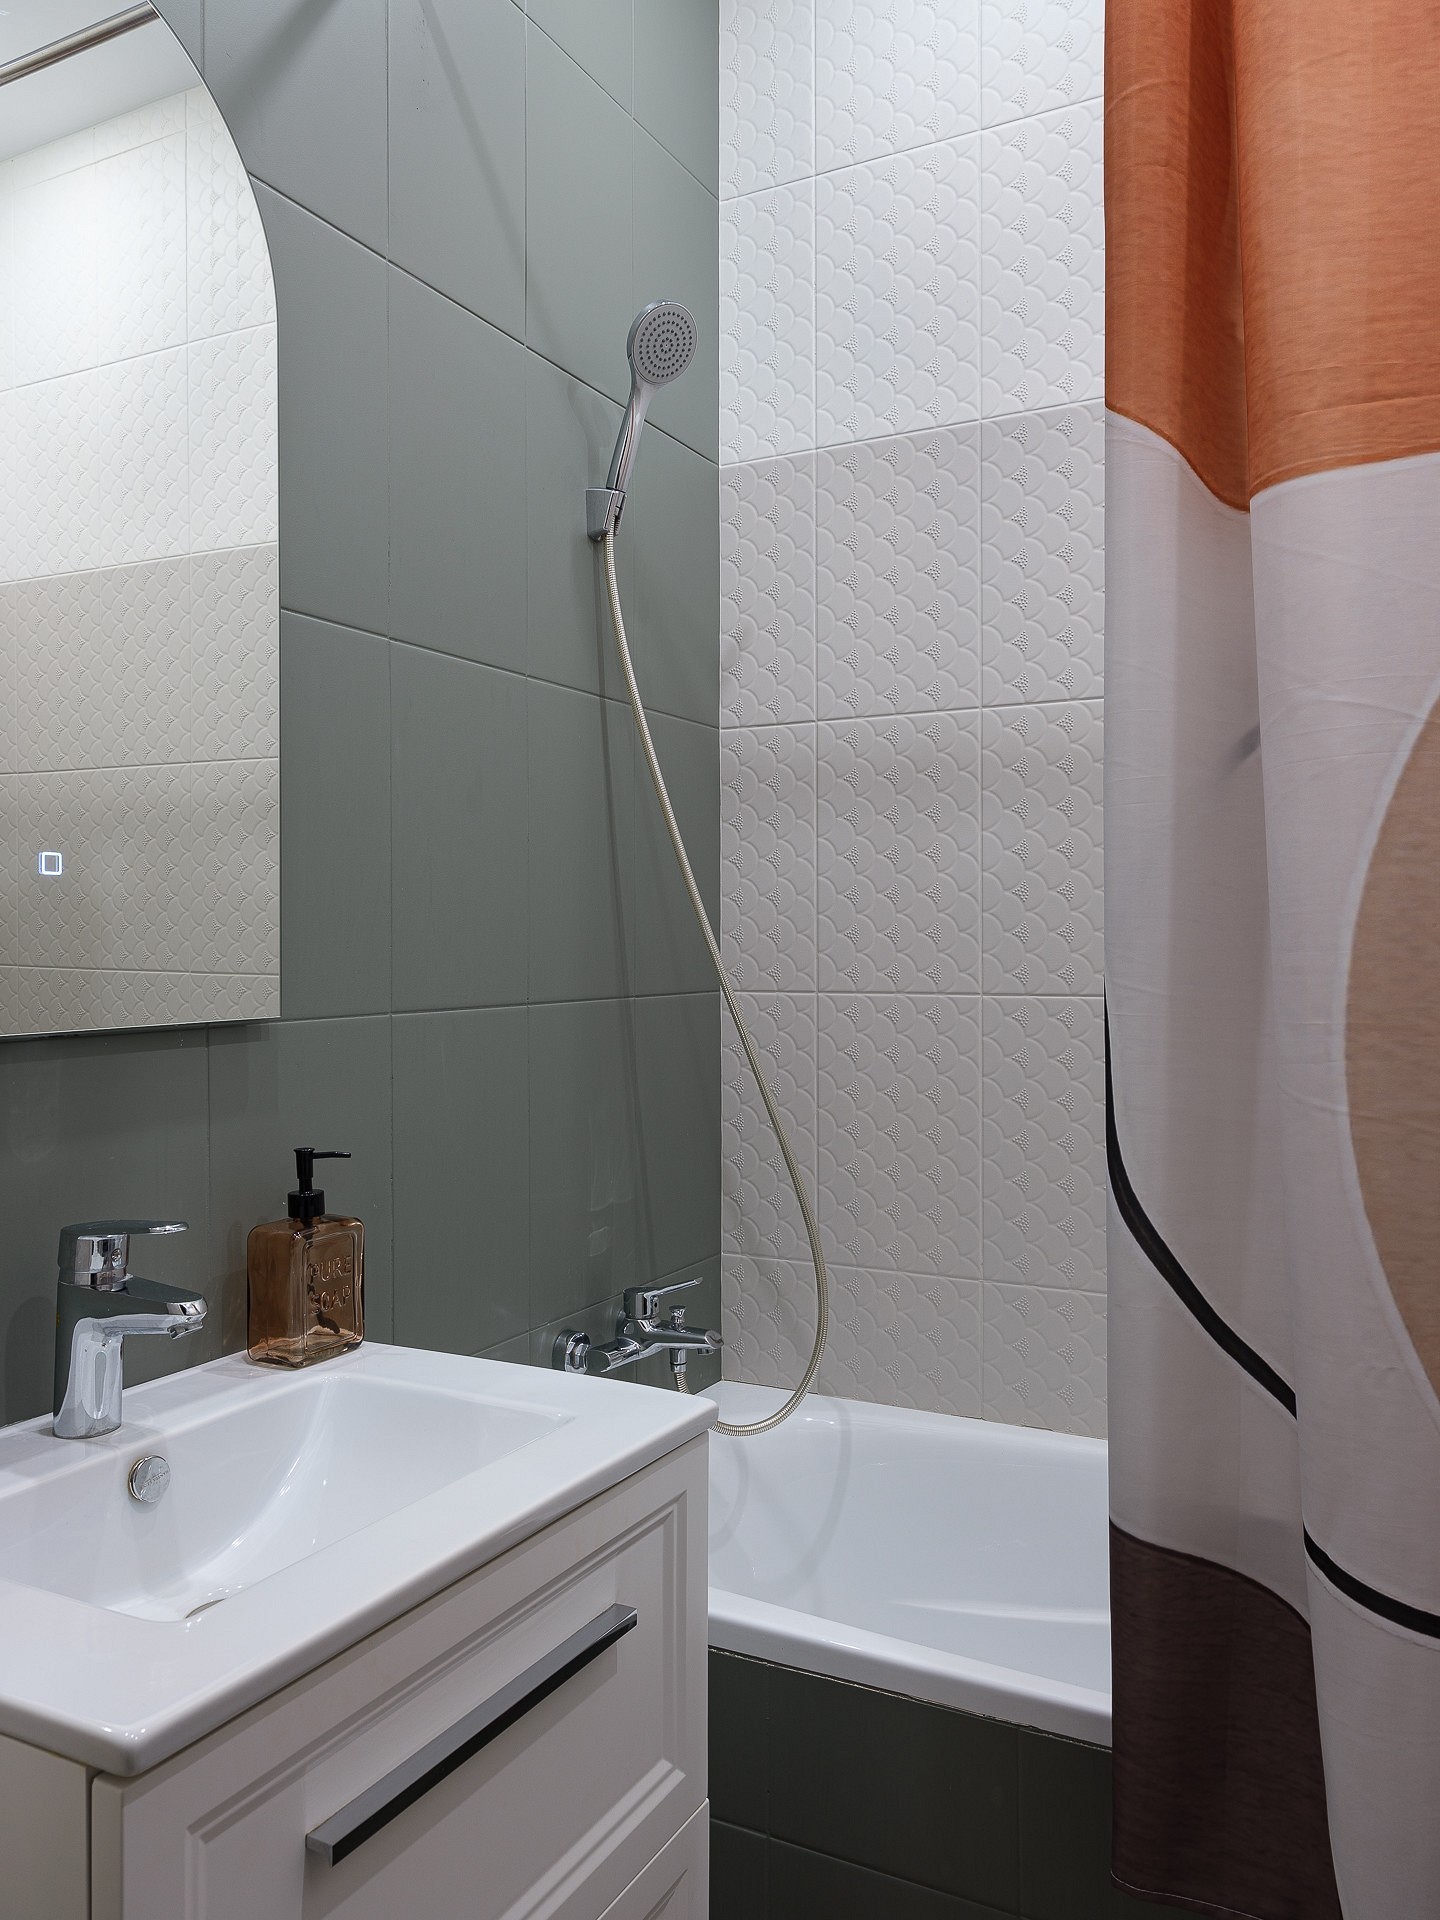 До и после: 7 ванных комнат от дизайнеров, которые теперь не узнать26